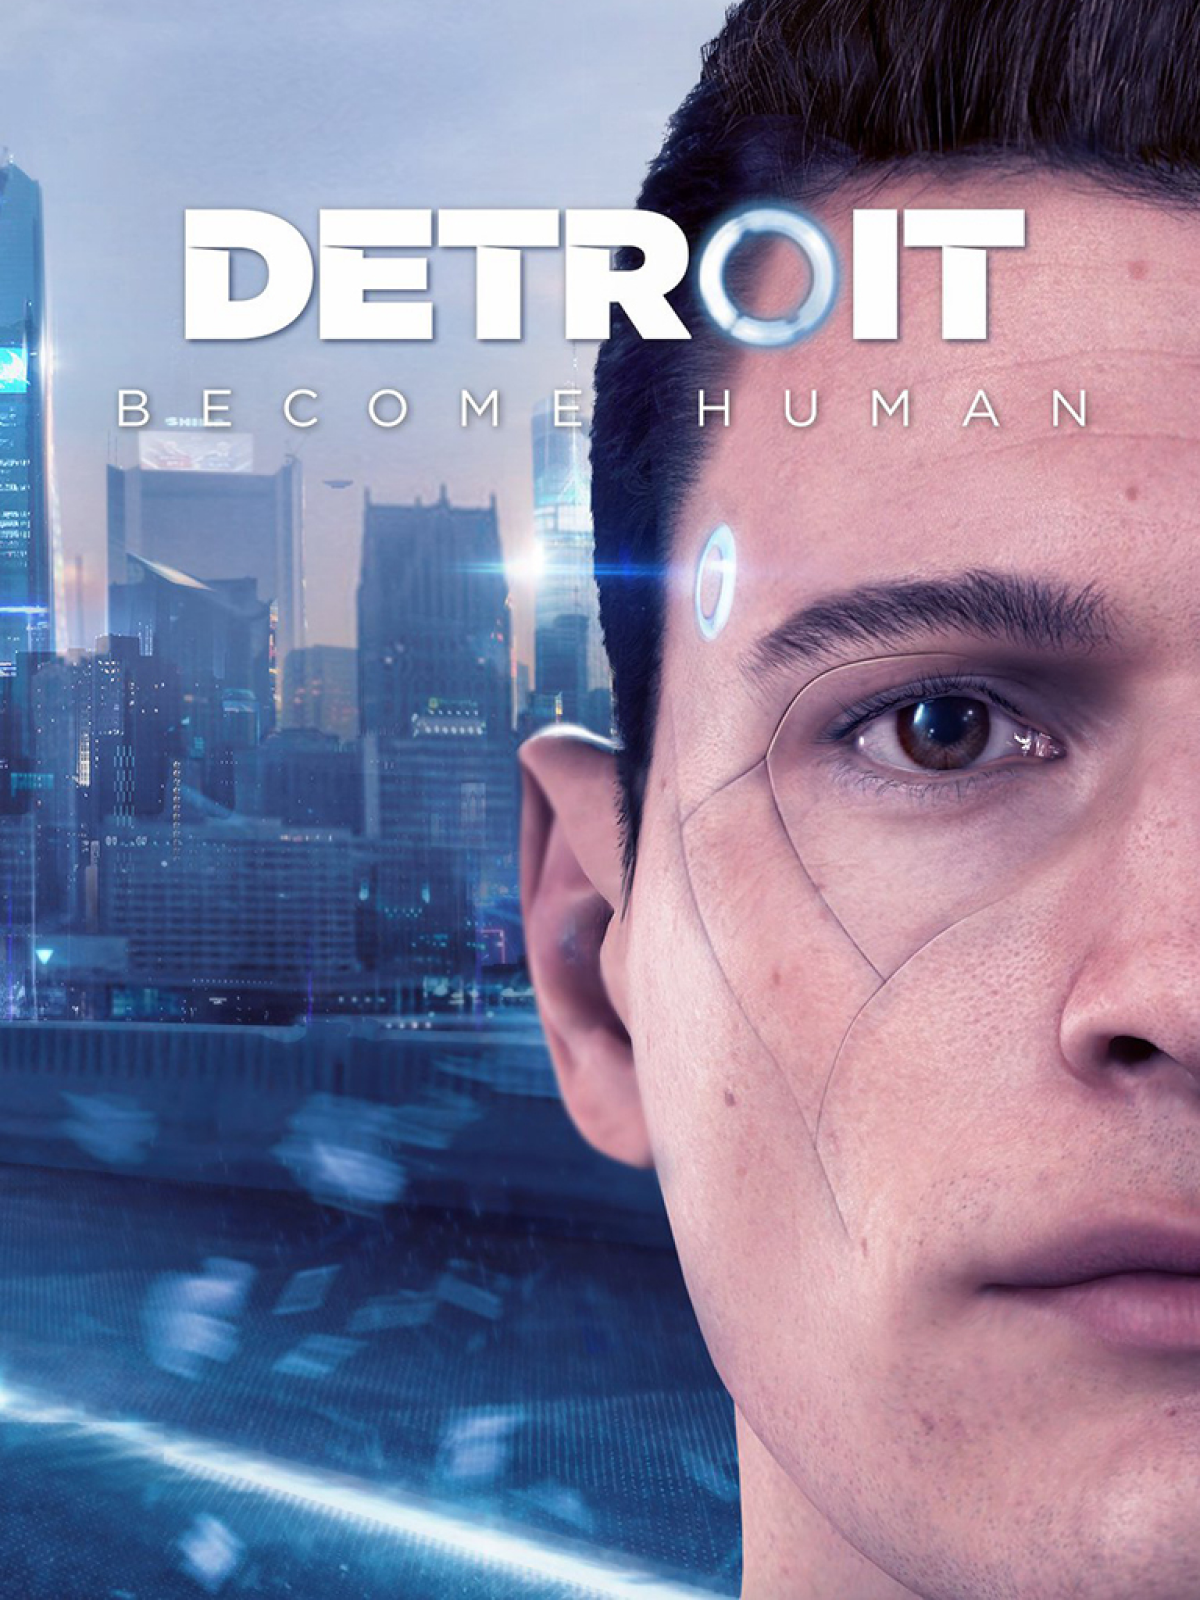 Компьютер для Detroit: Become Human - системные требования